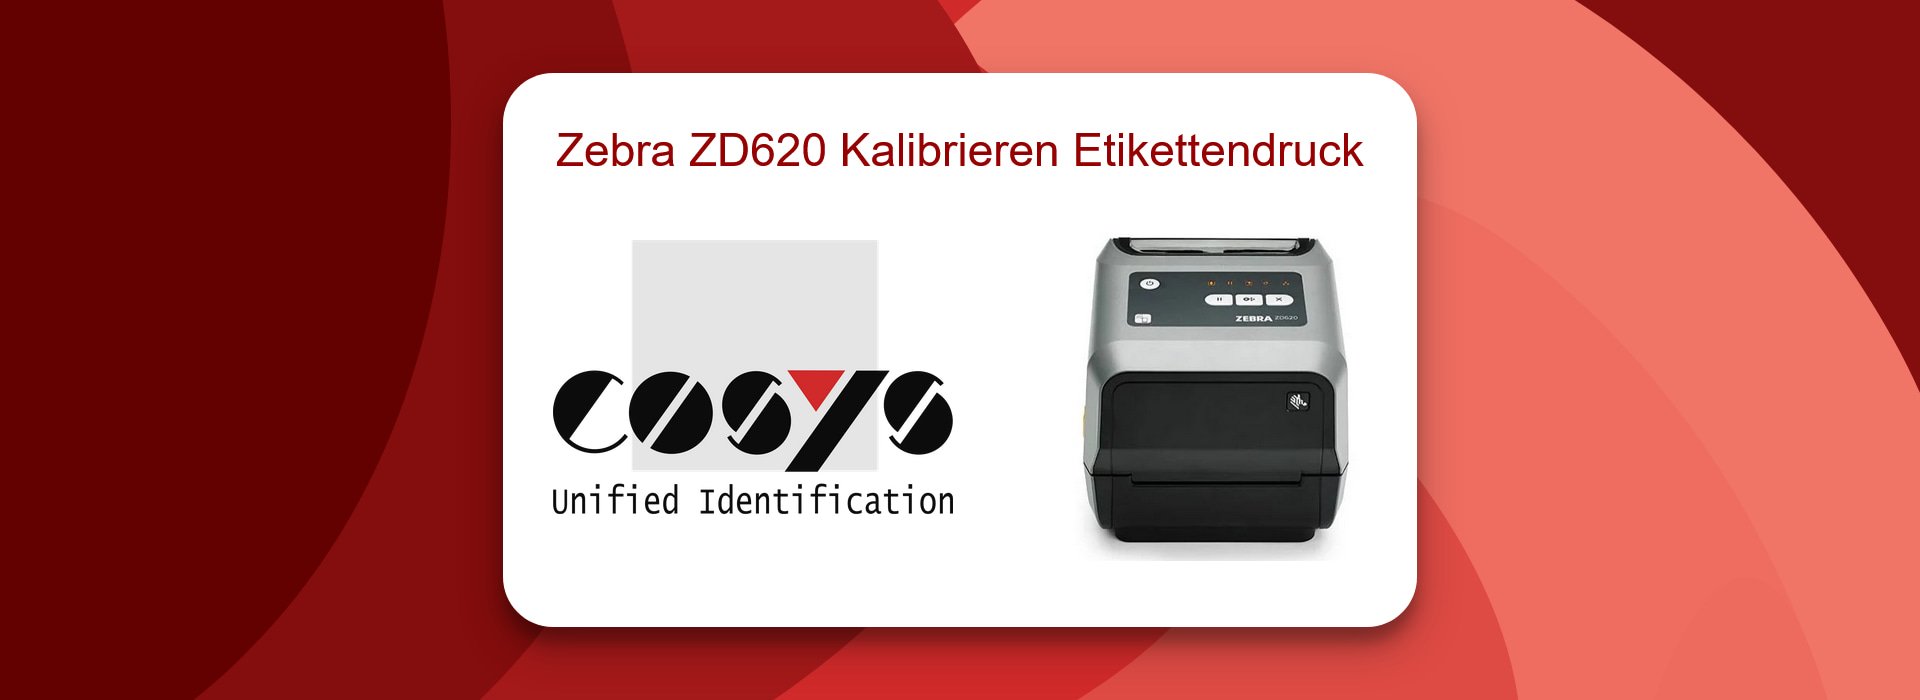 Anleitung zur Zebra ZD620 Drucker Kalibrierung